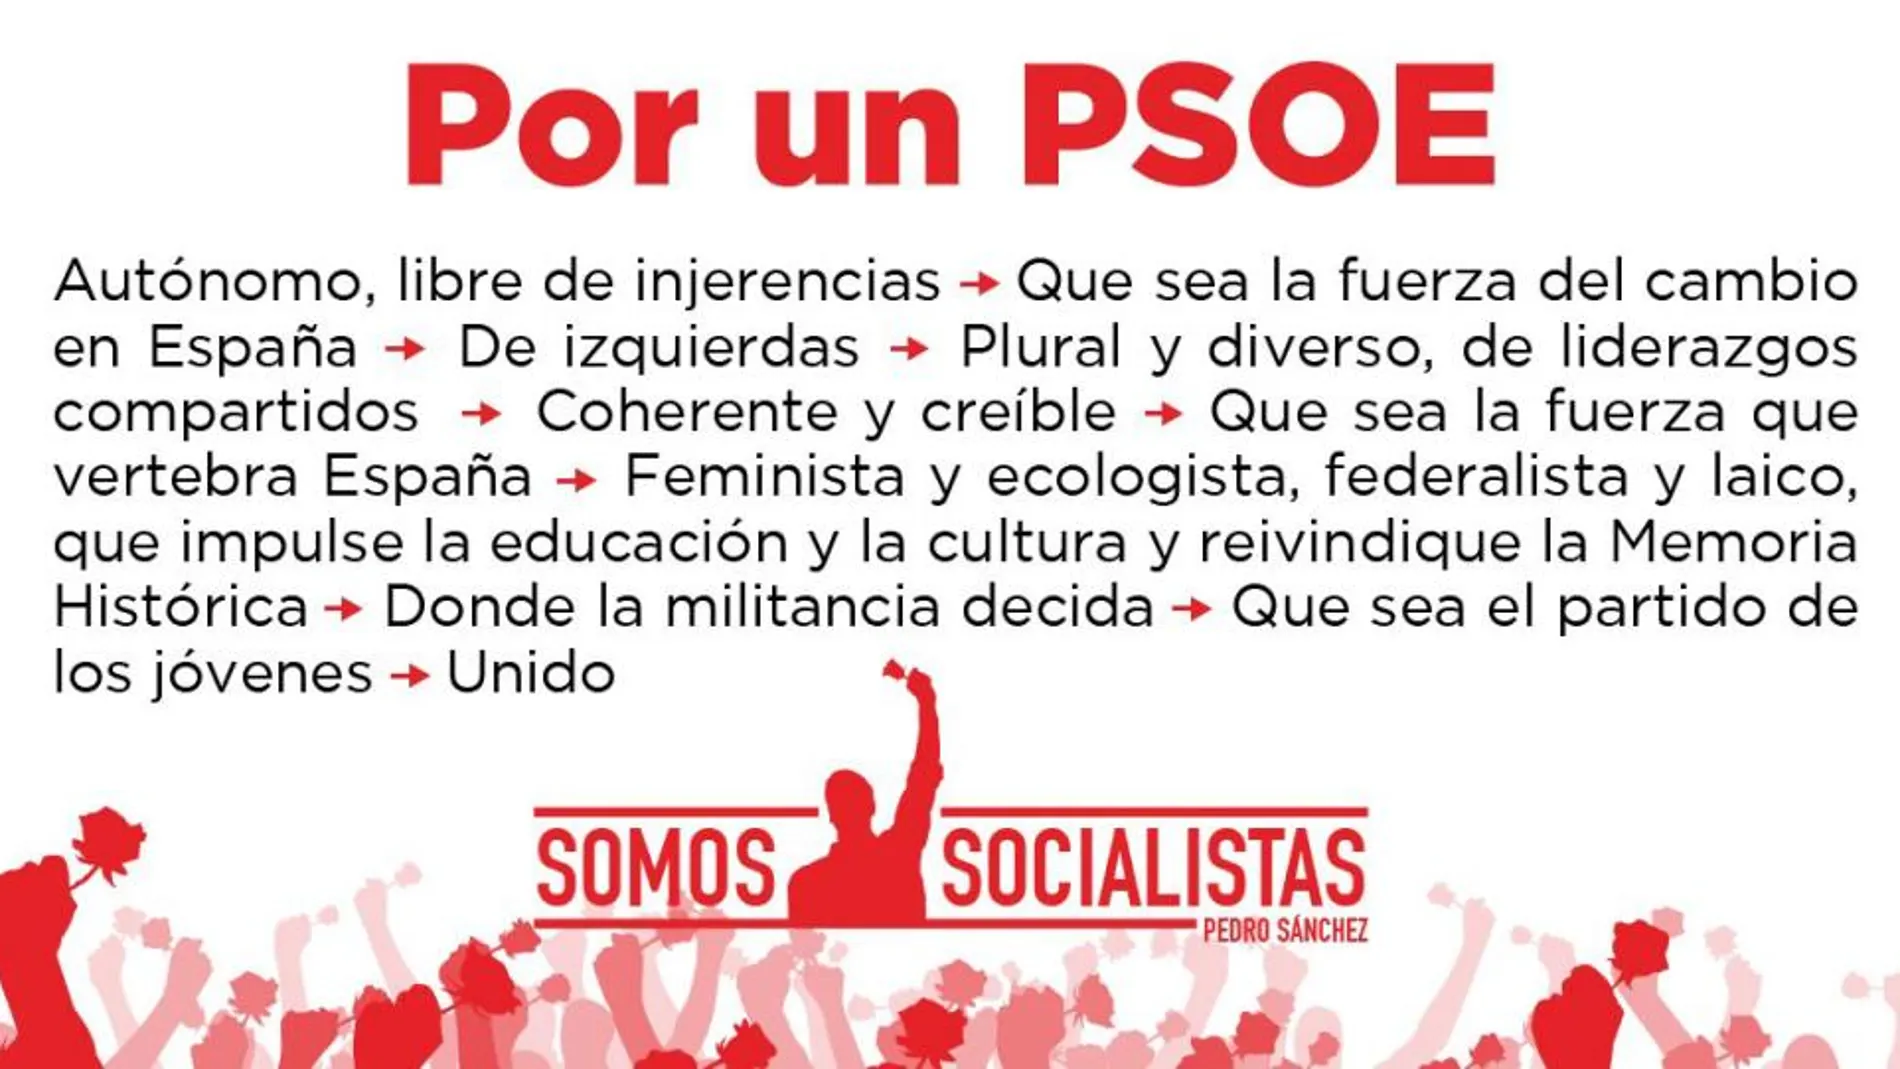 Pedro Sánchez quiere un PSOE de izquierdas, feminista, ecologista, juvenil y unido